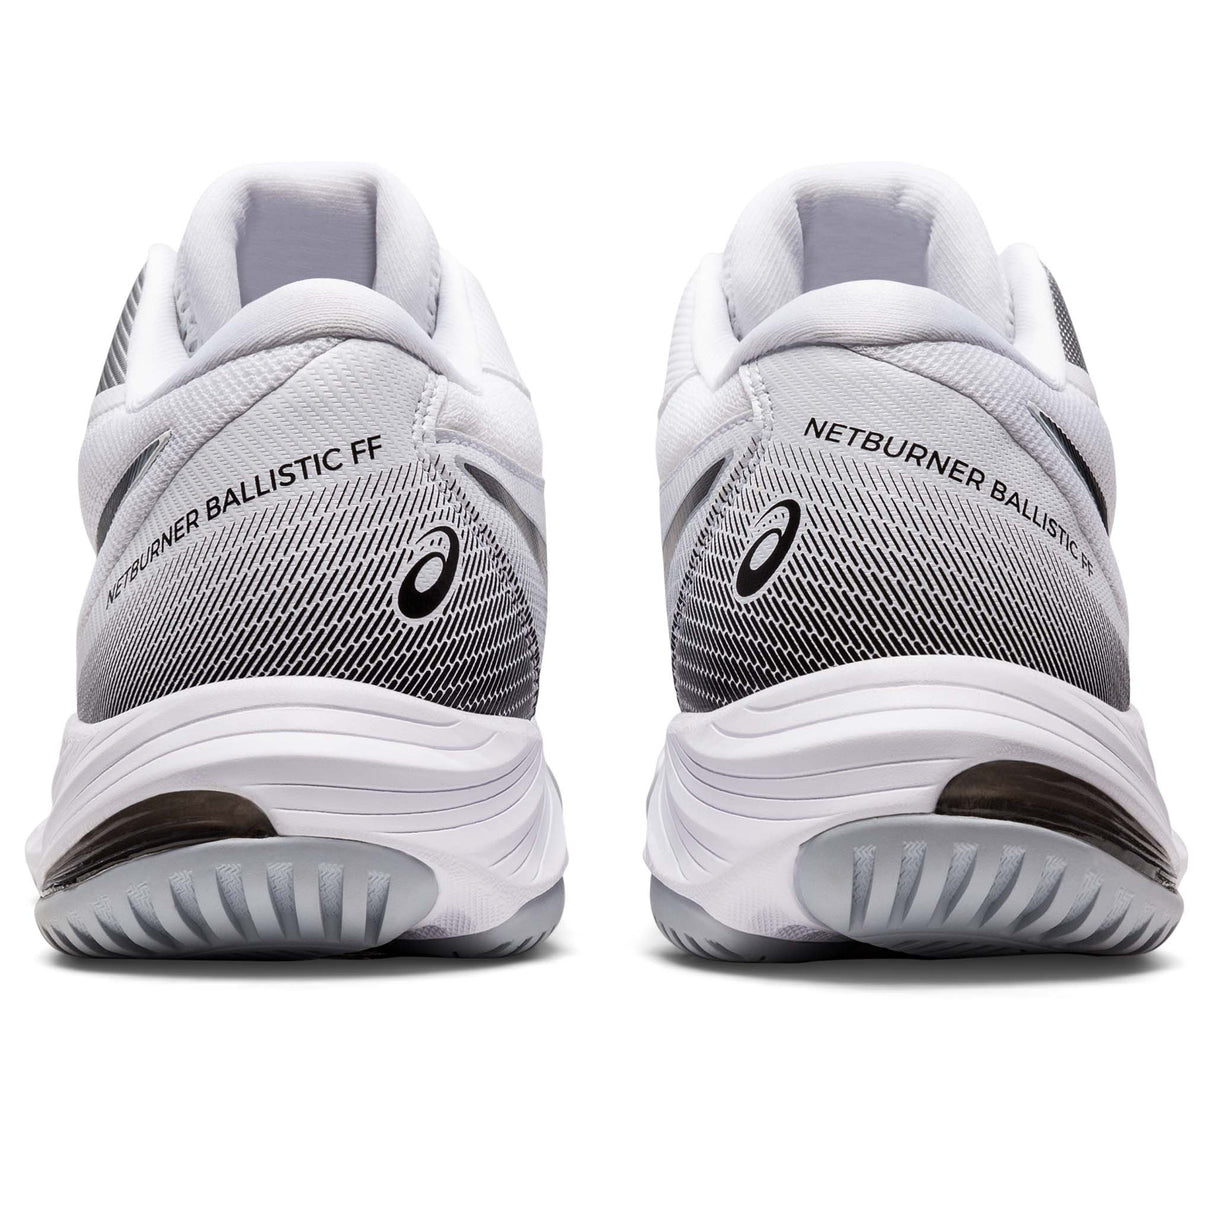 ASICS Netburner Ballistic FF MT 3 chaussures de volley-ball femme blanc noir talons